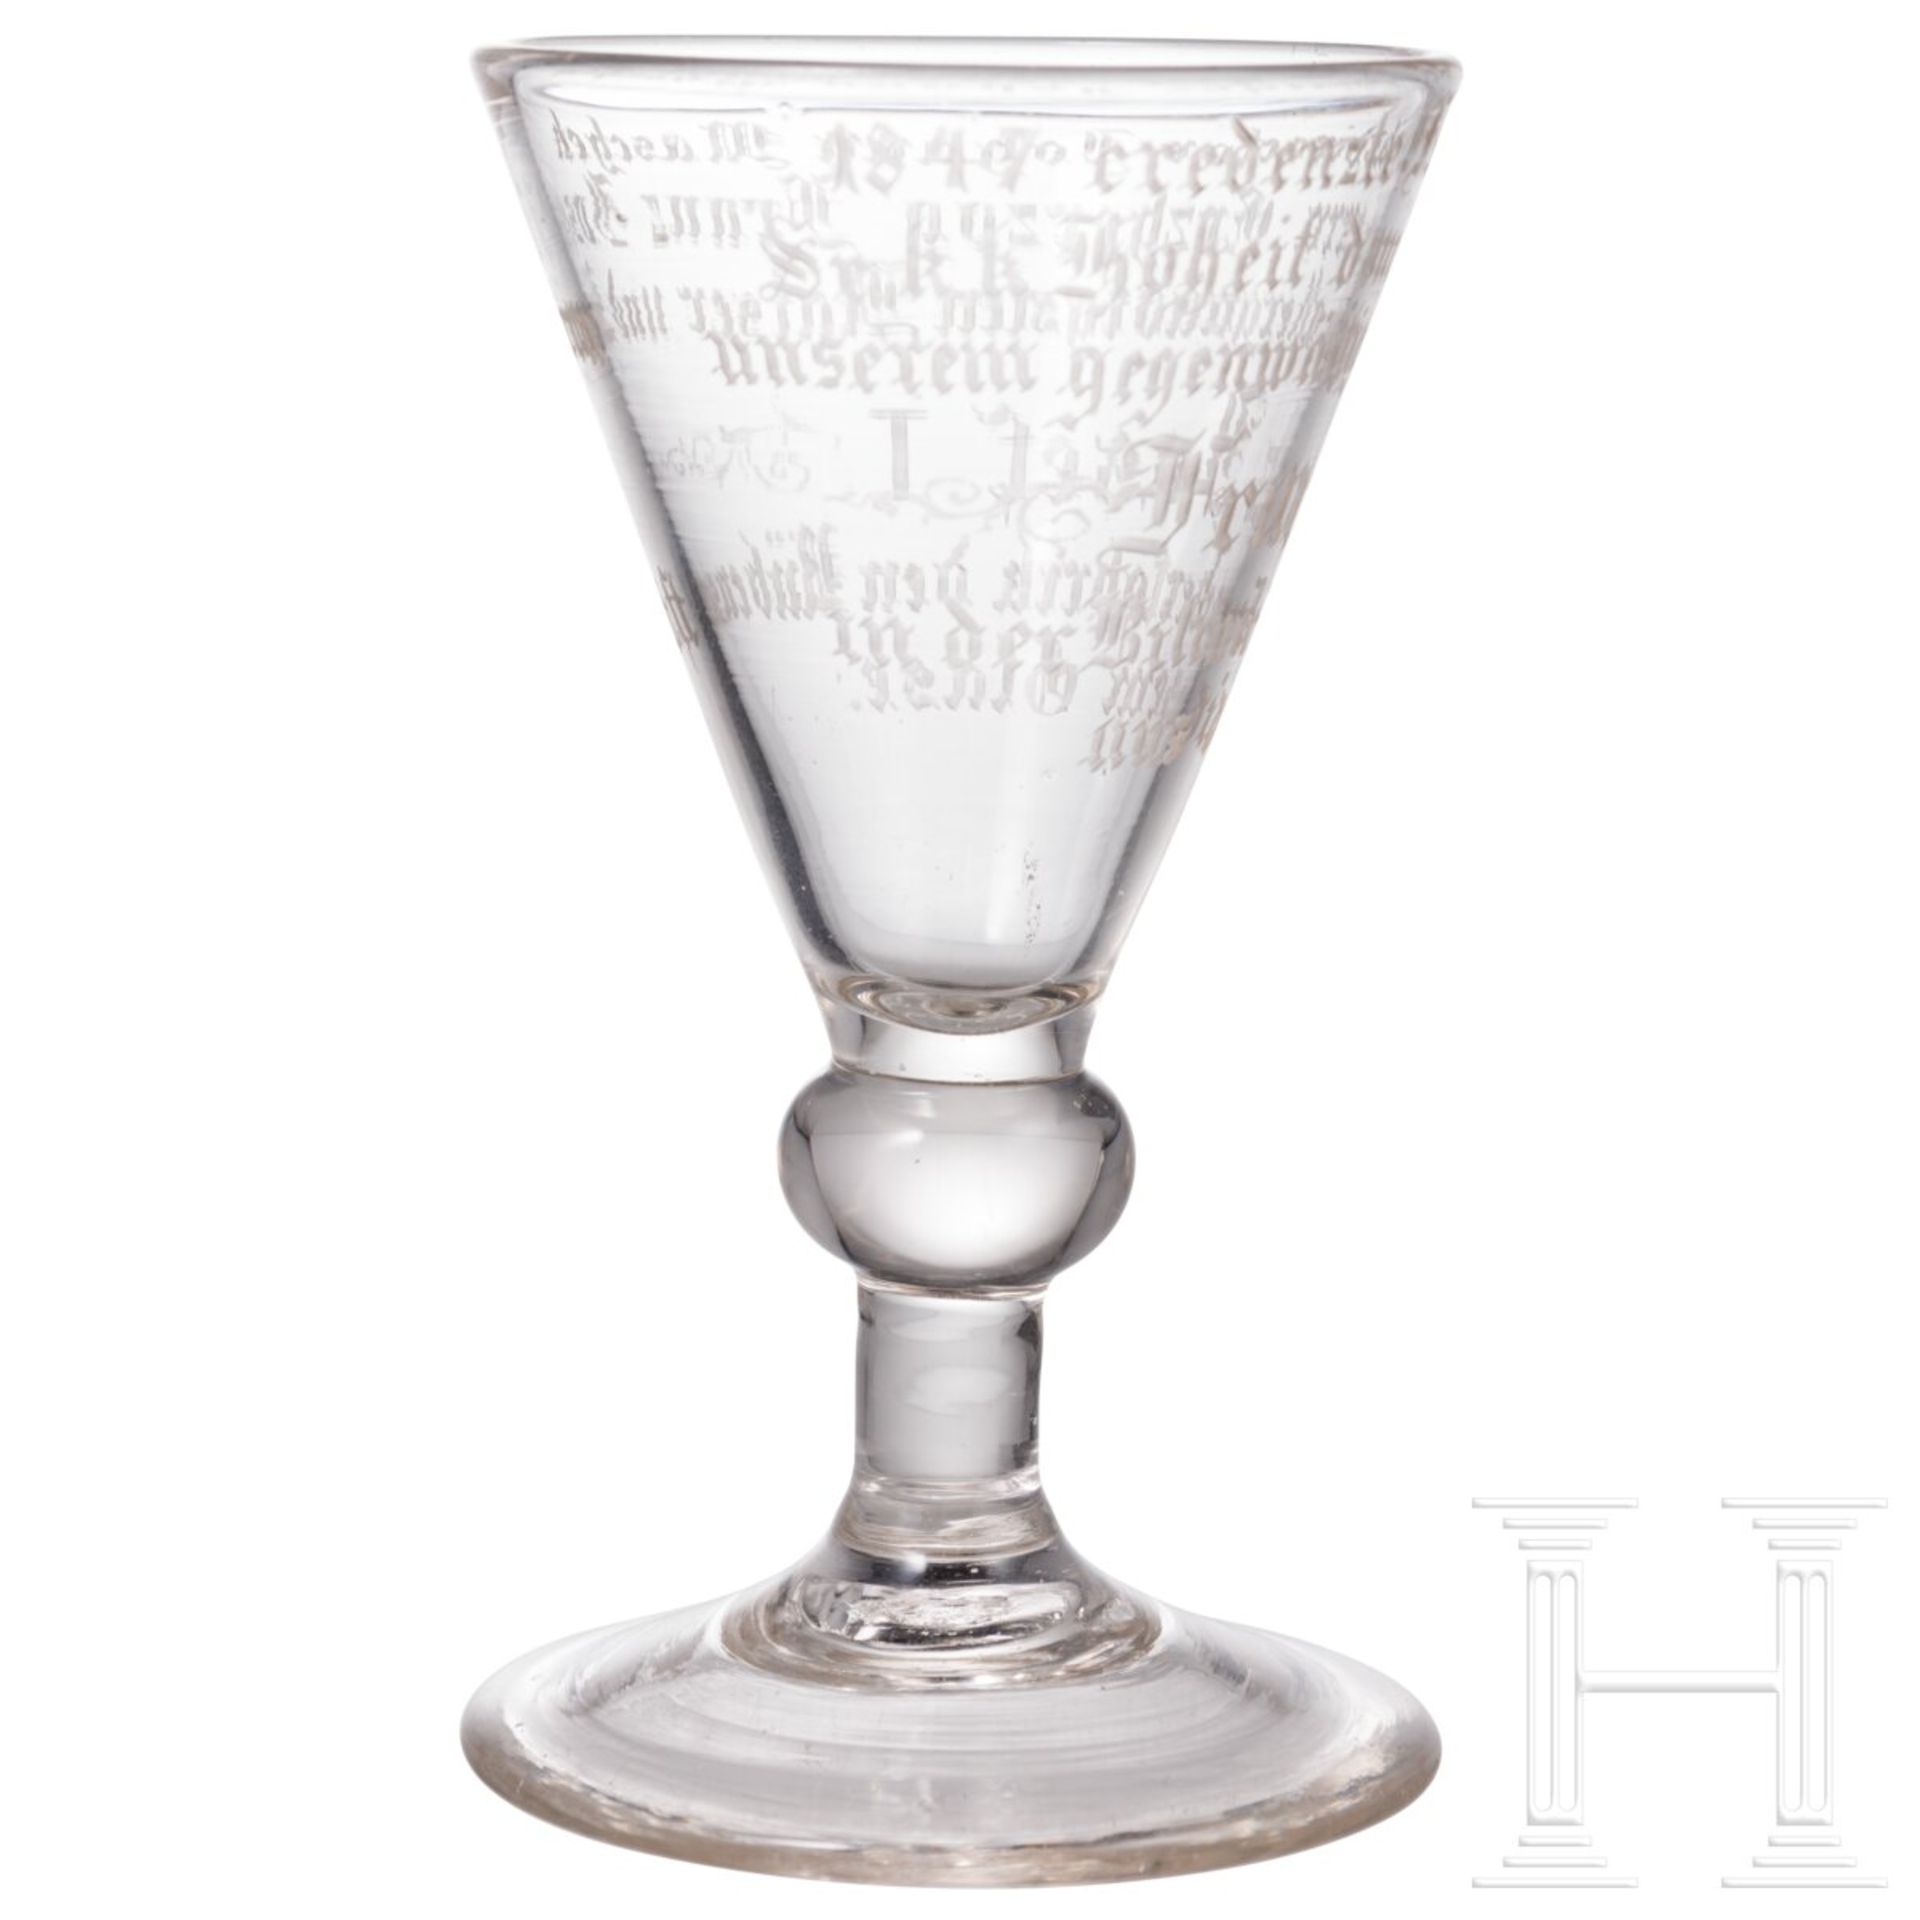 Kaiser Franz Joseph I. - Likörglas mit Geschenkinschrift, datiert 1847 - Bild 2 aus 4